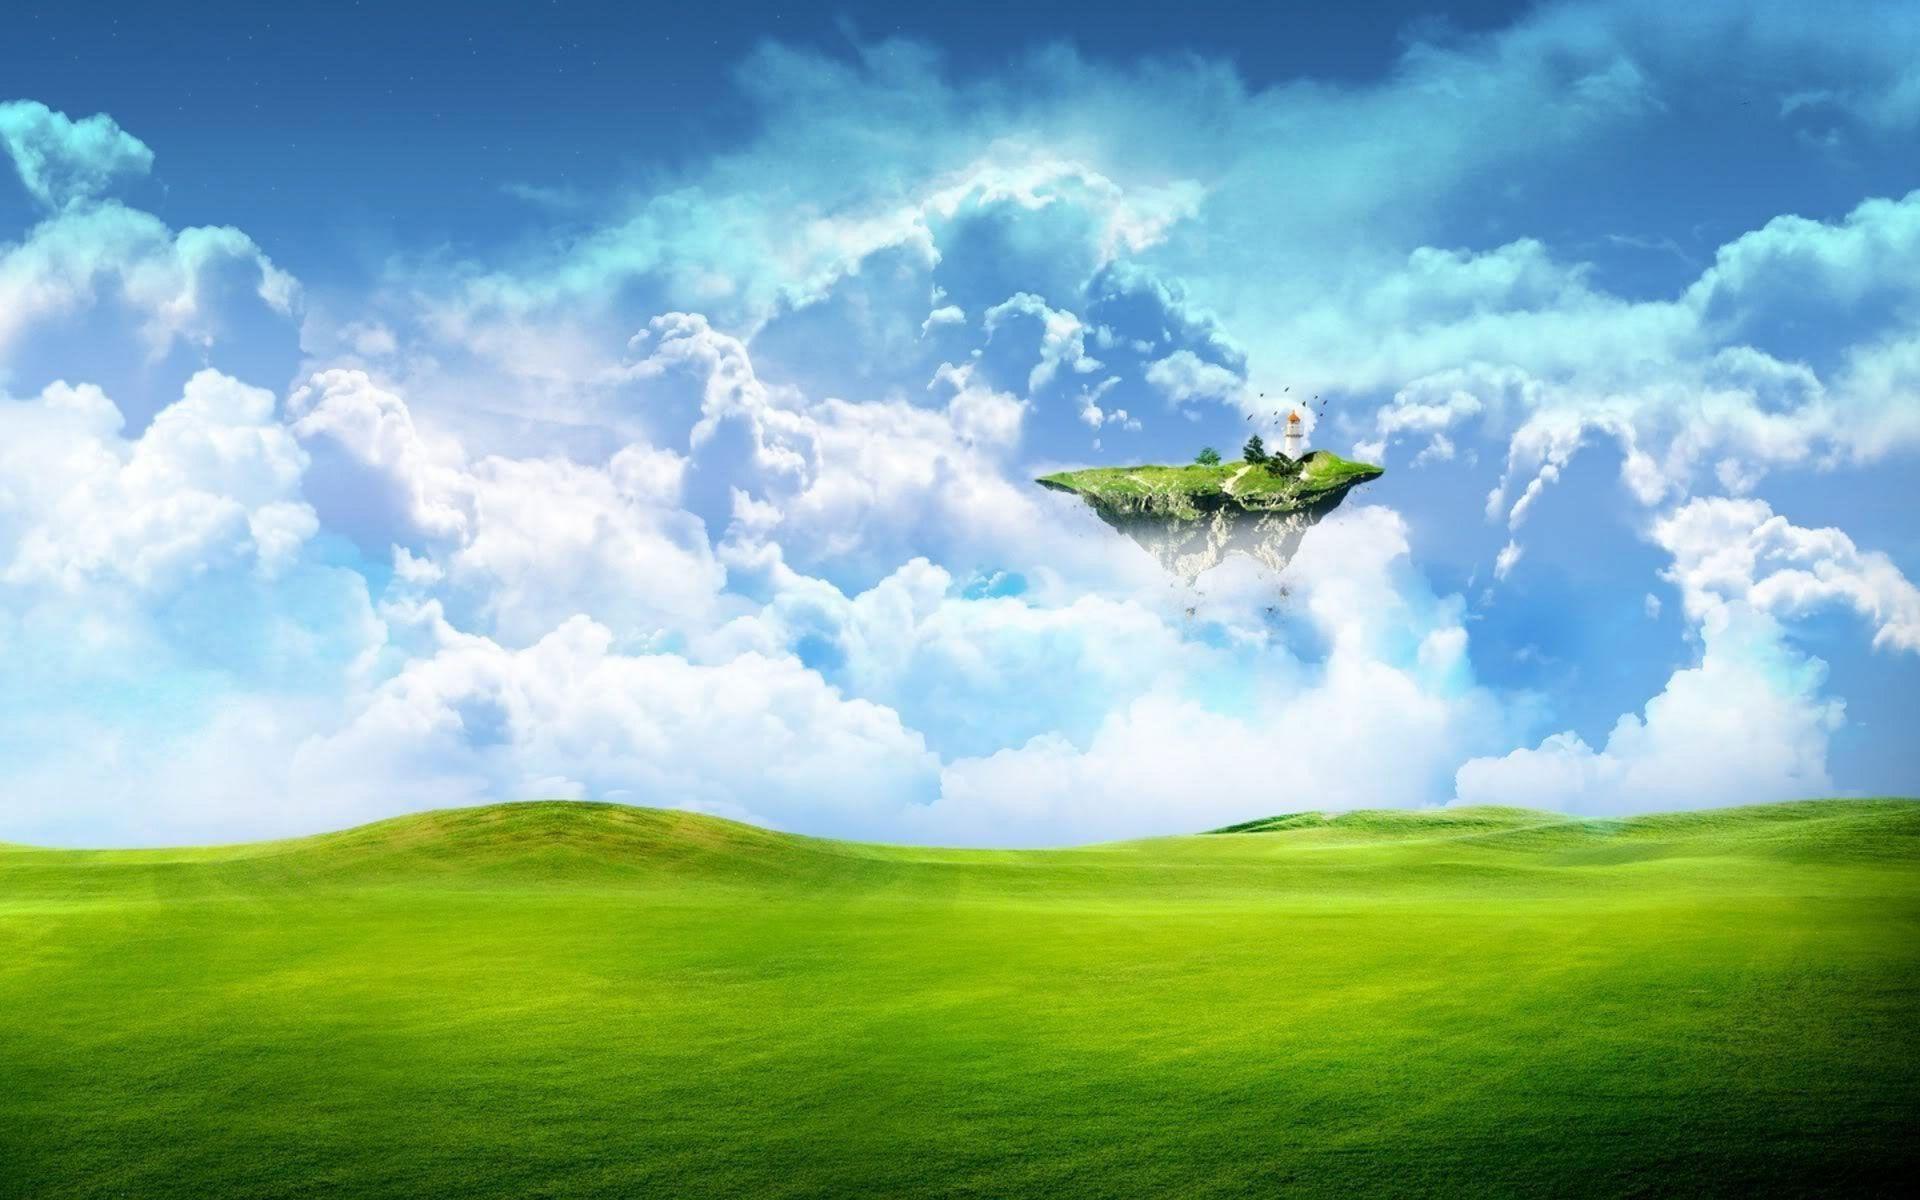 The grassland landscape design wallpaper Desktop Background